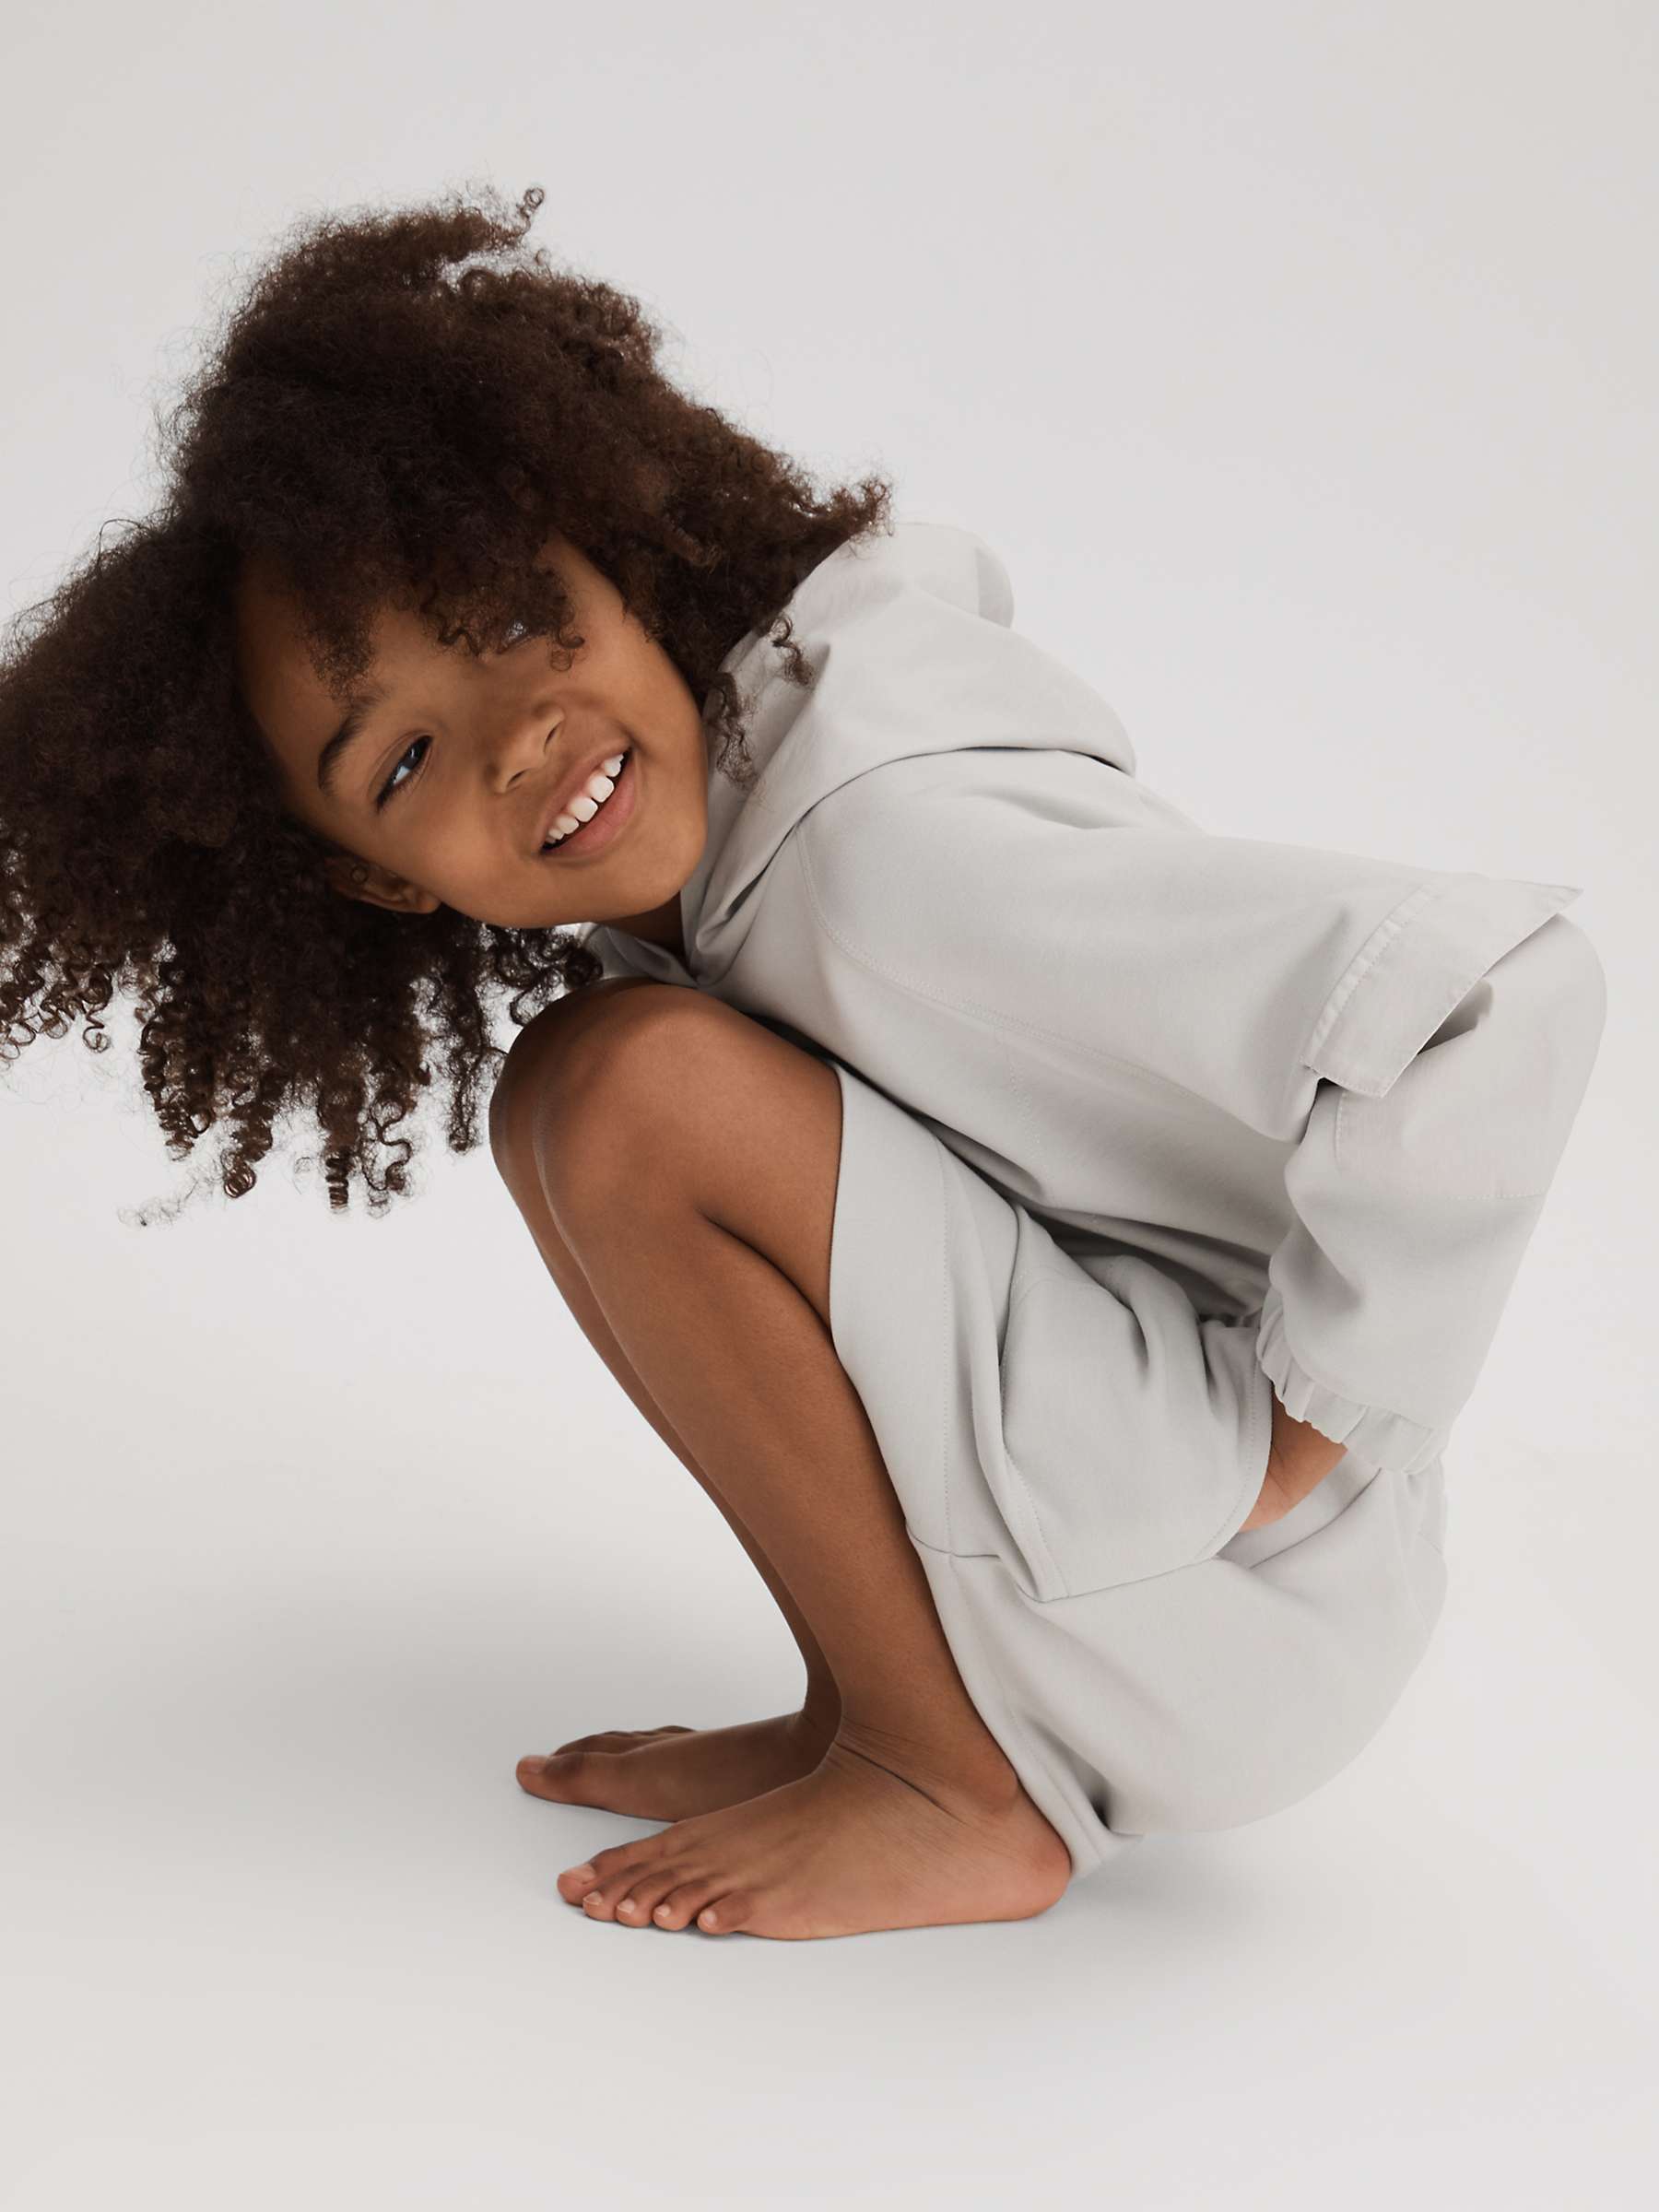 Buy Reiss Kids' Rhonda Hooded Shellsuit Dress, Grey Online at johnlewis.com